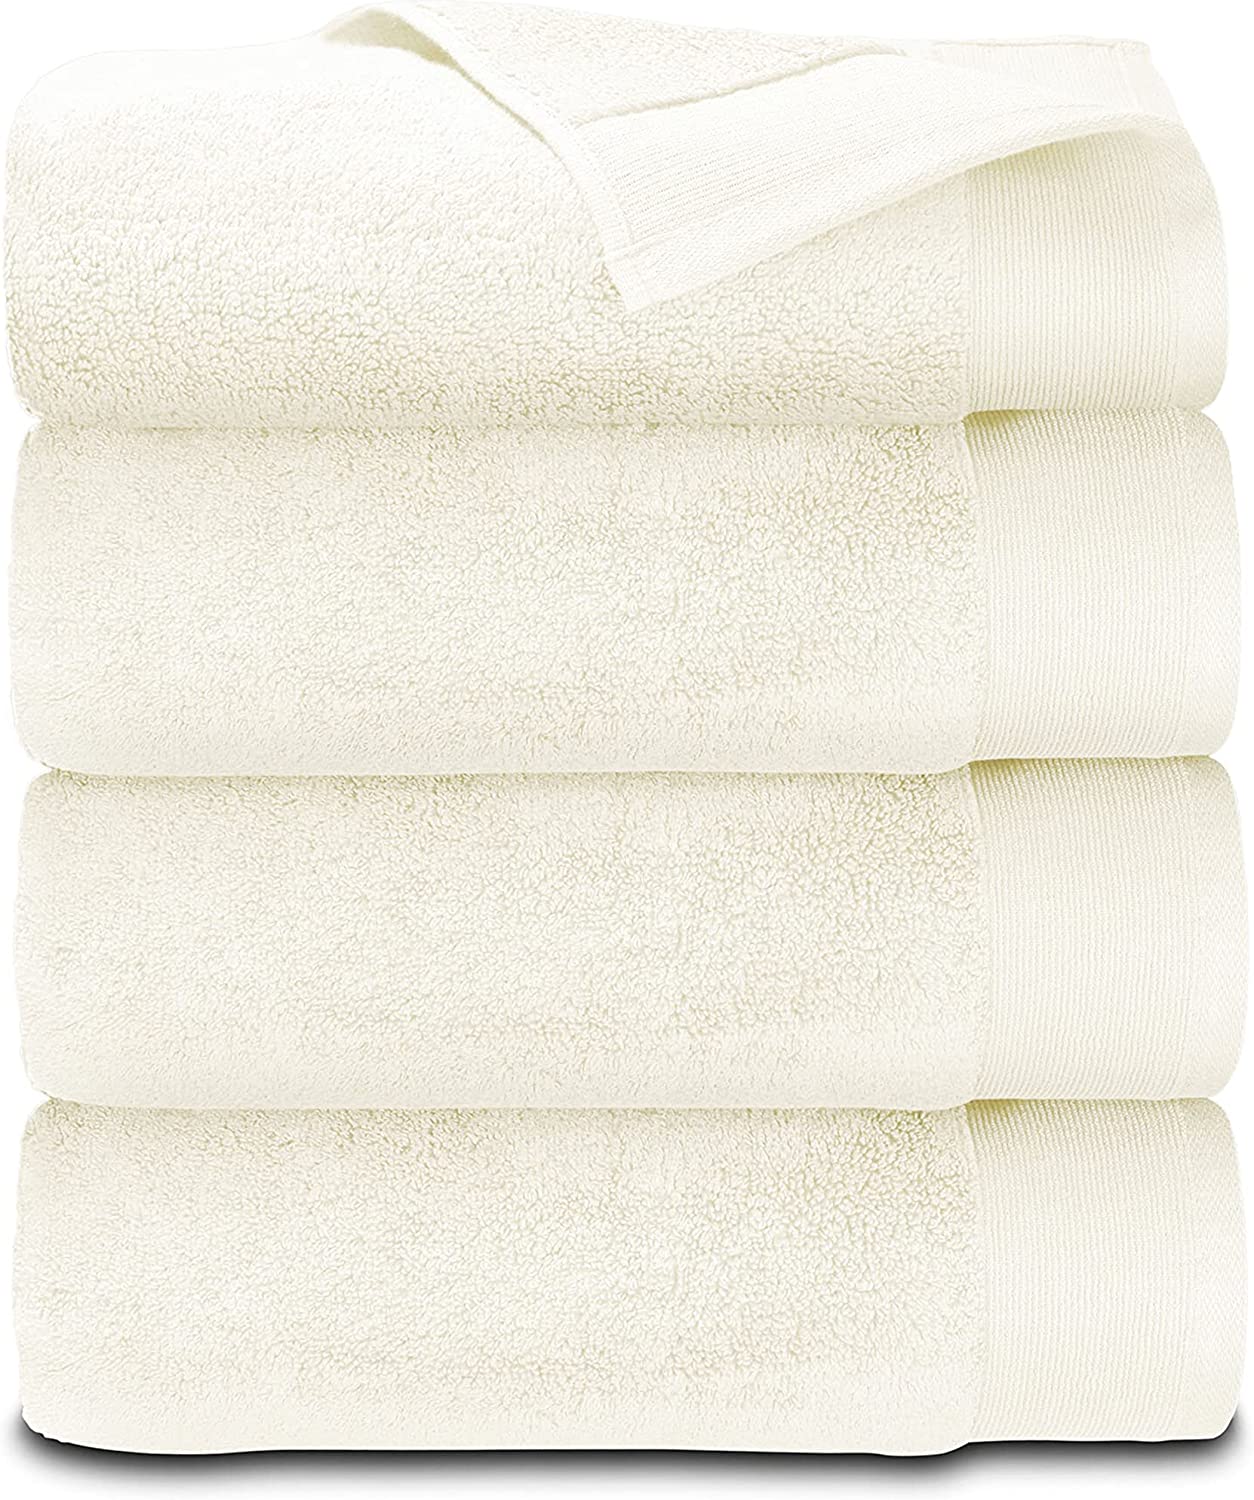  California Design Den Luxury 100% Cotton Bath Sheet